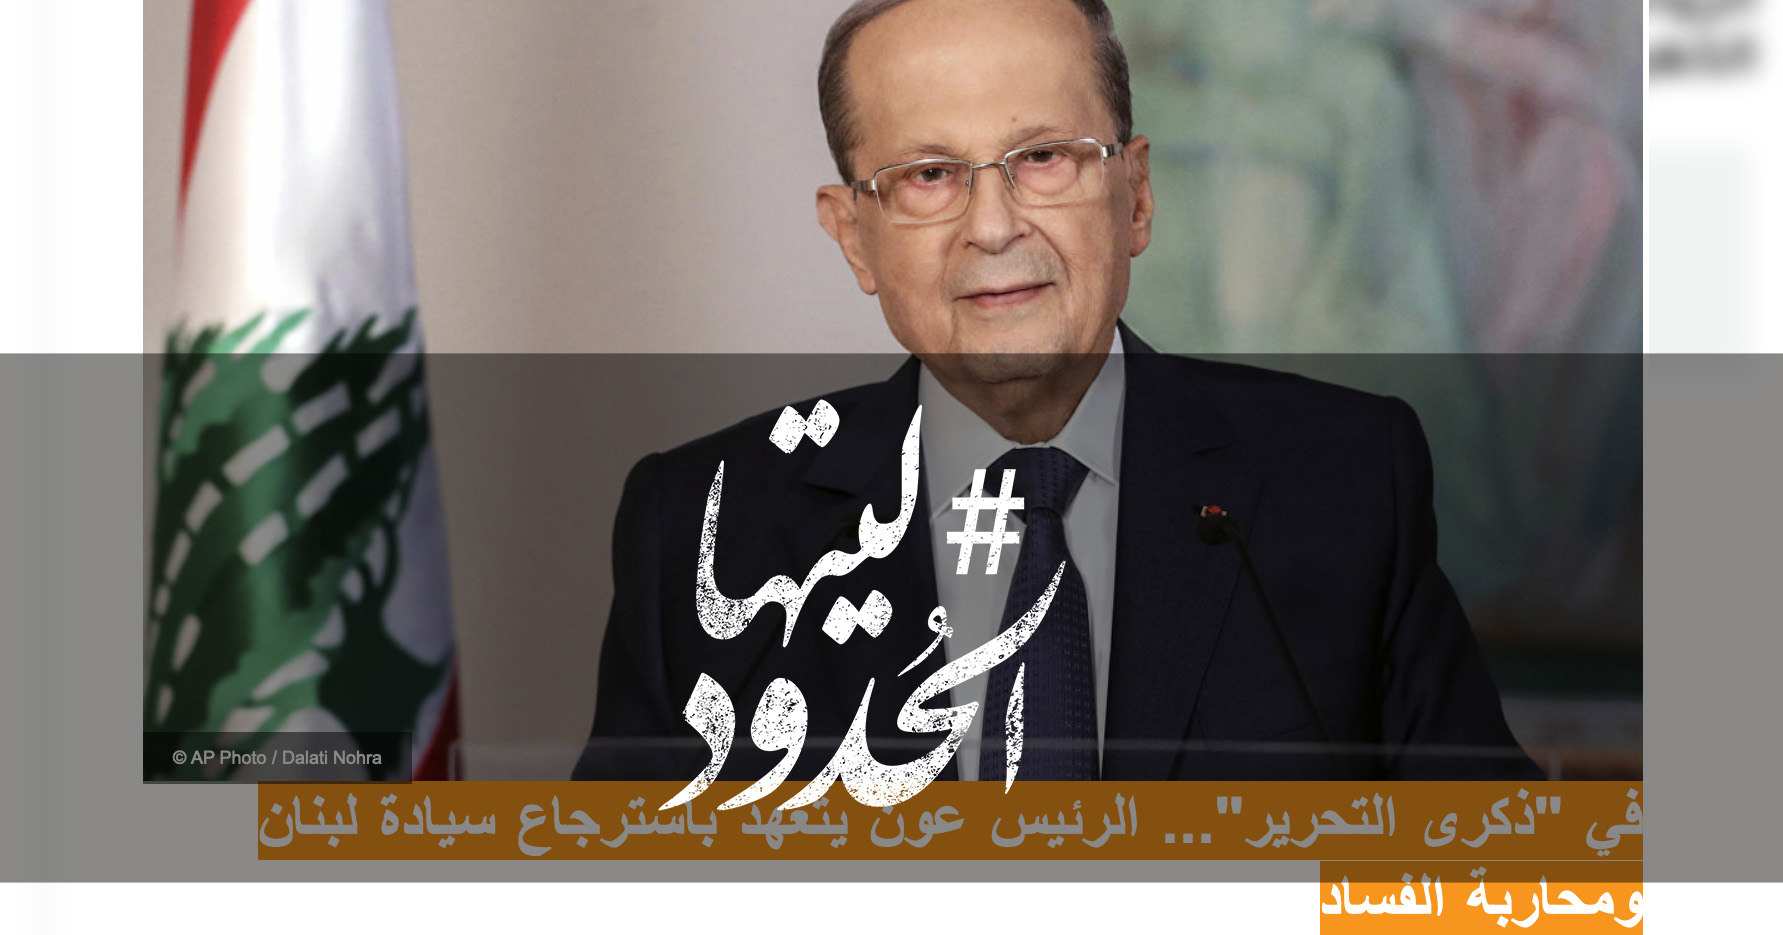 صورة في "ذكرى التحرير"... الرئيس عون يتعهد باسترجاع سيادة لبنان ومحاربة الفساد